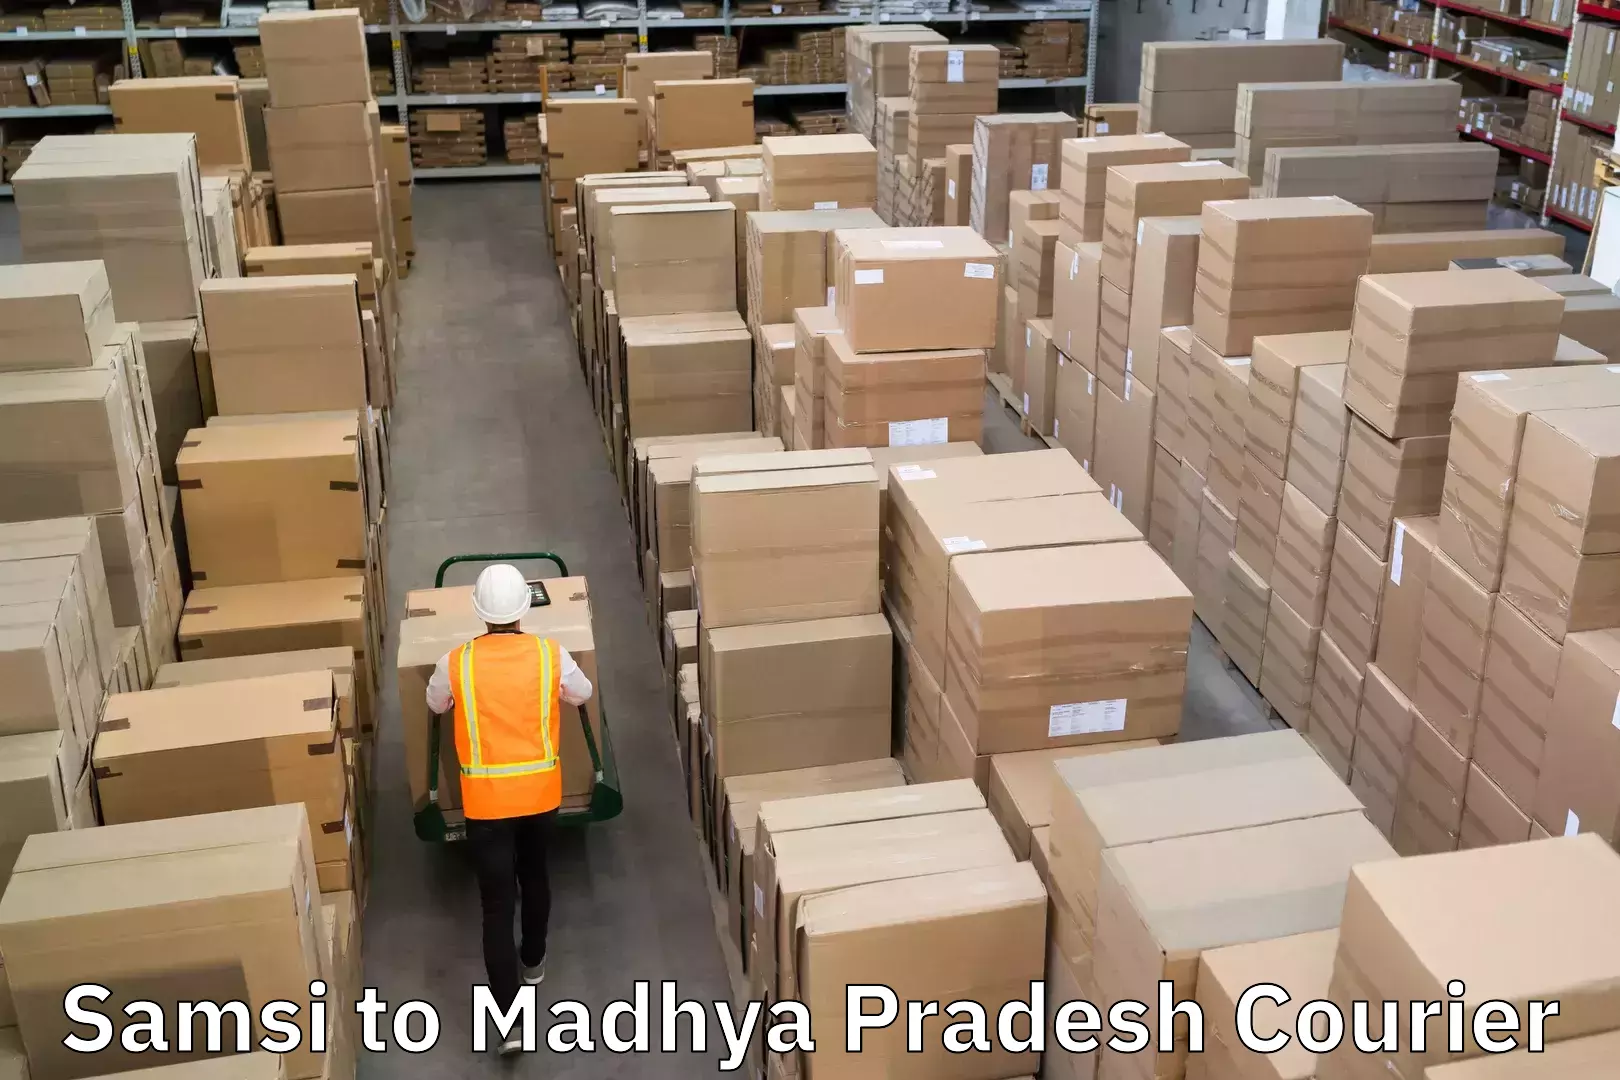 Door-to-door freight service Samsi to Madhya Pradesh